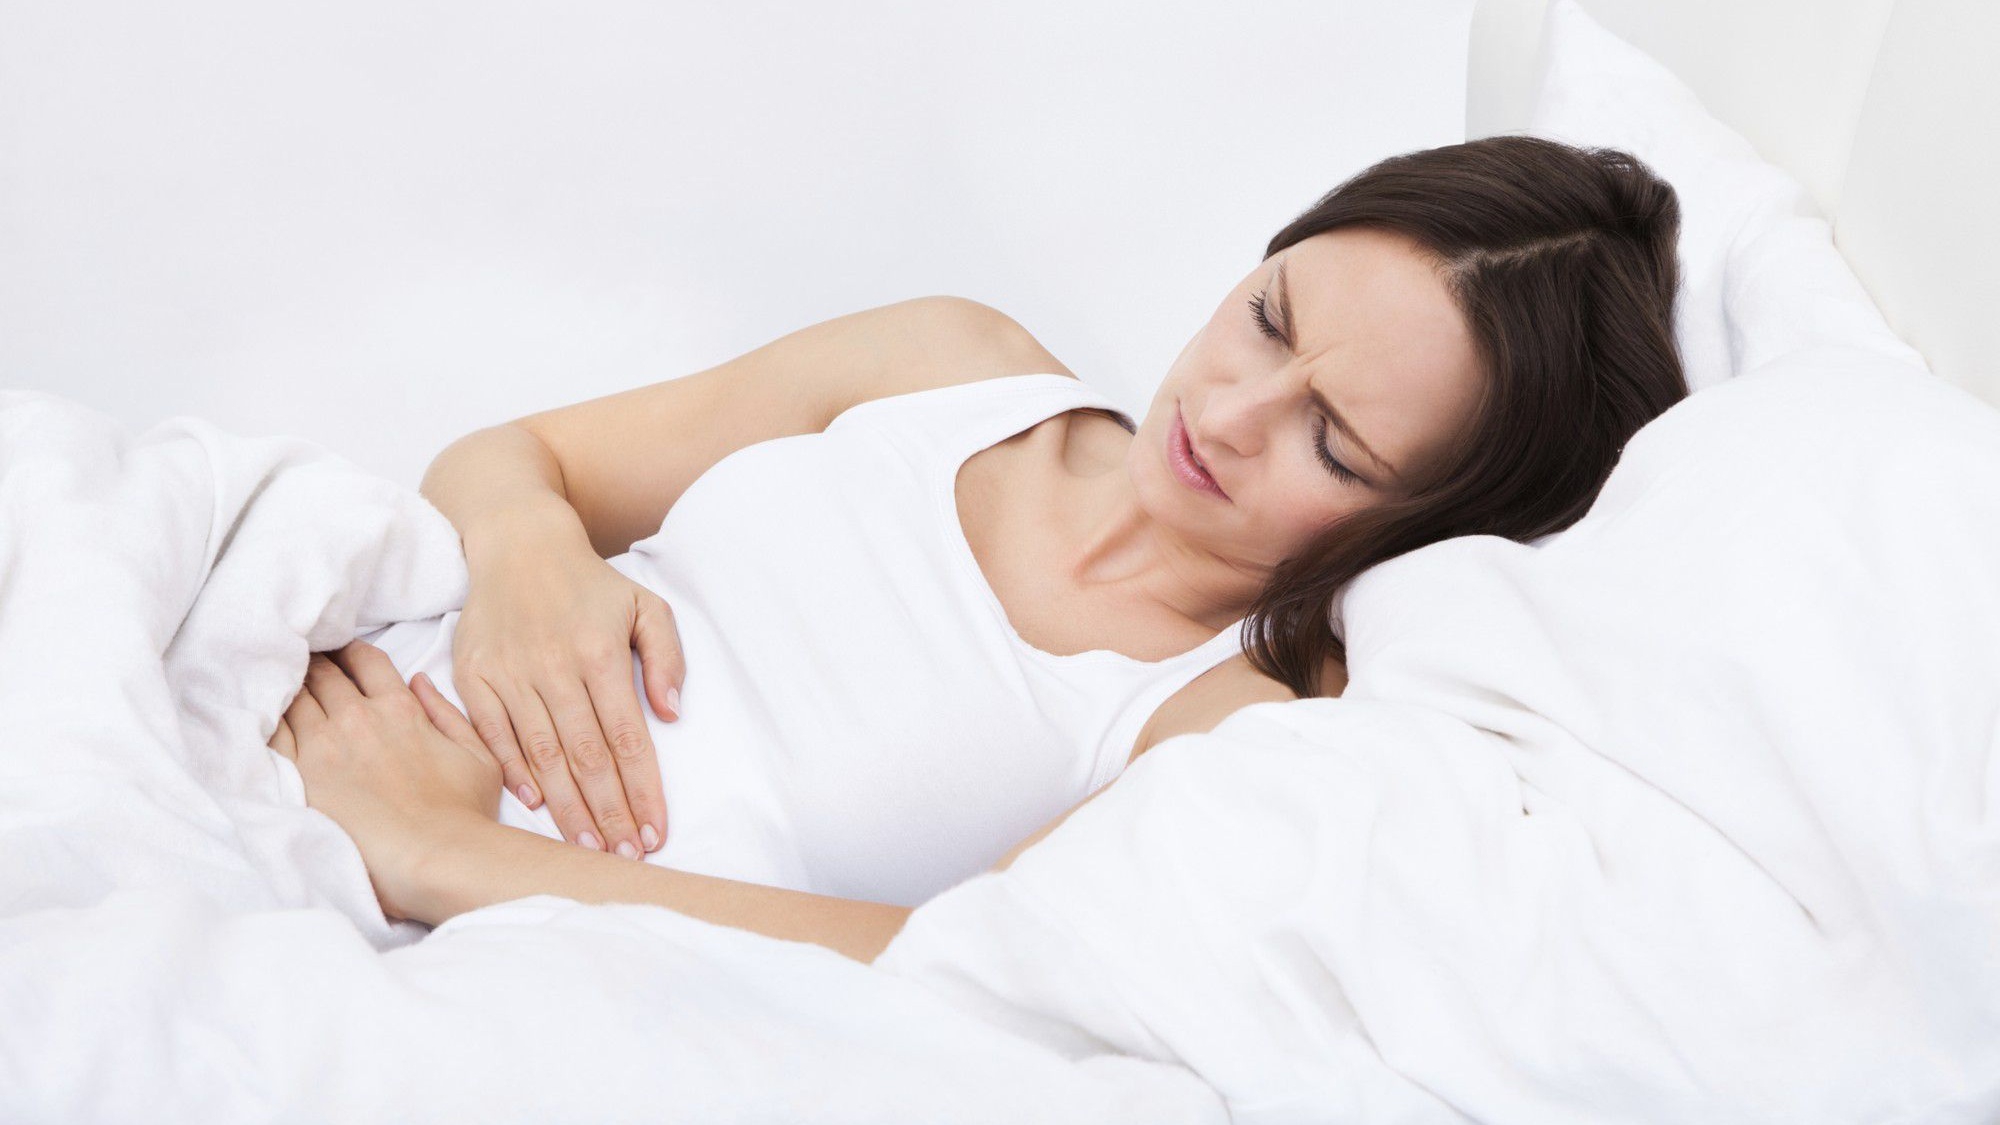 Chướng bụng và đau lưng có xuất phát từ vị trí nào trong cơ thể khi mang thai?
